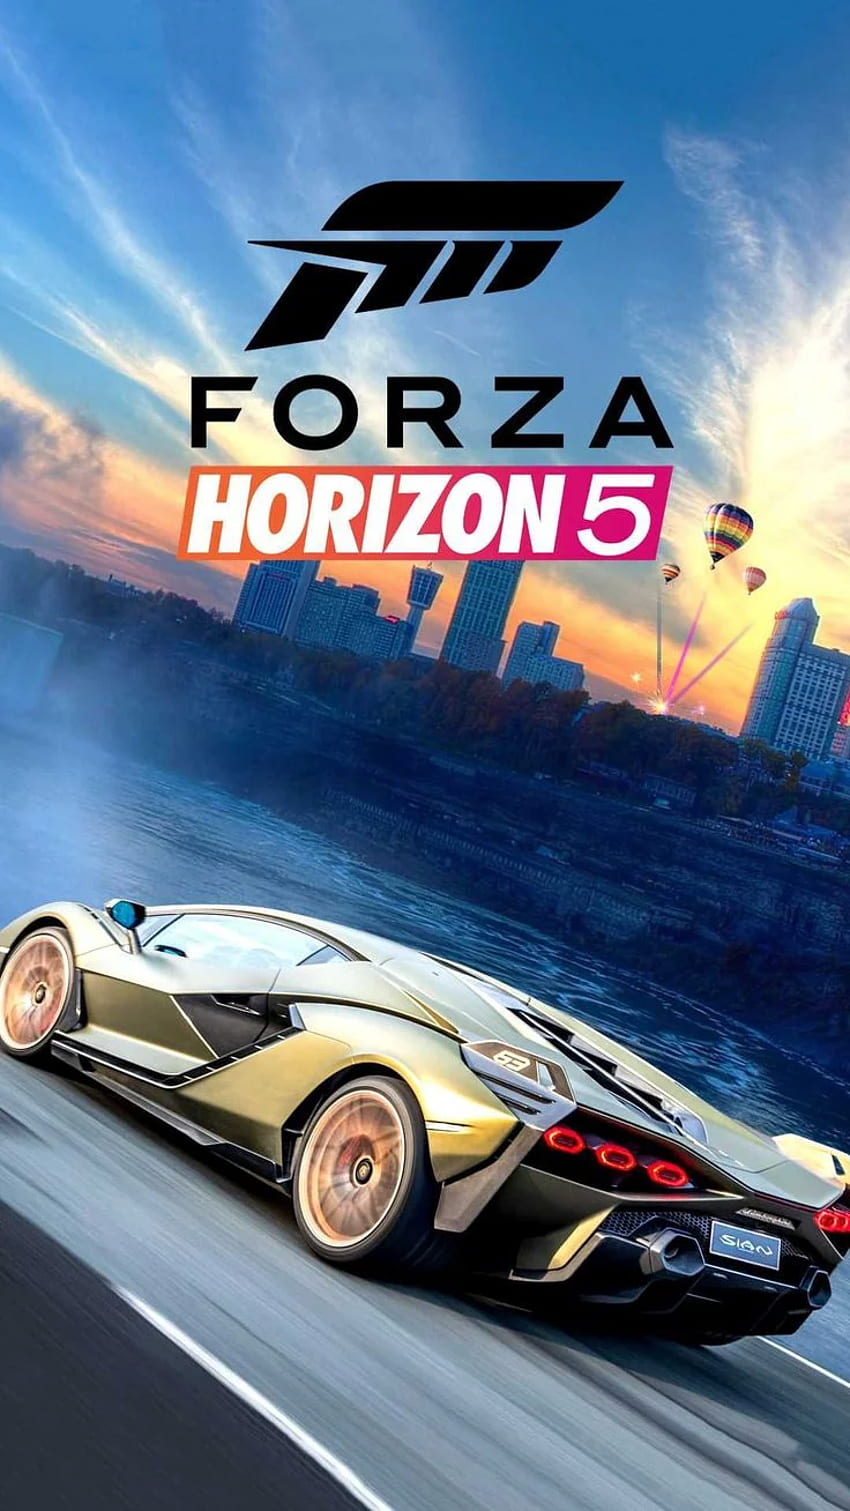 Forza Horizo​​n 5 Forza, Forza Horizo​​n, Forza Horizo​​n 5, ゲーム, レーシング .. Forza Horizo​​n 5, Forza Horizo​​n, Forza, Forza Horizo​​n 5 HD電話の壁紙